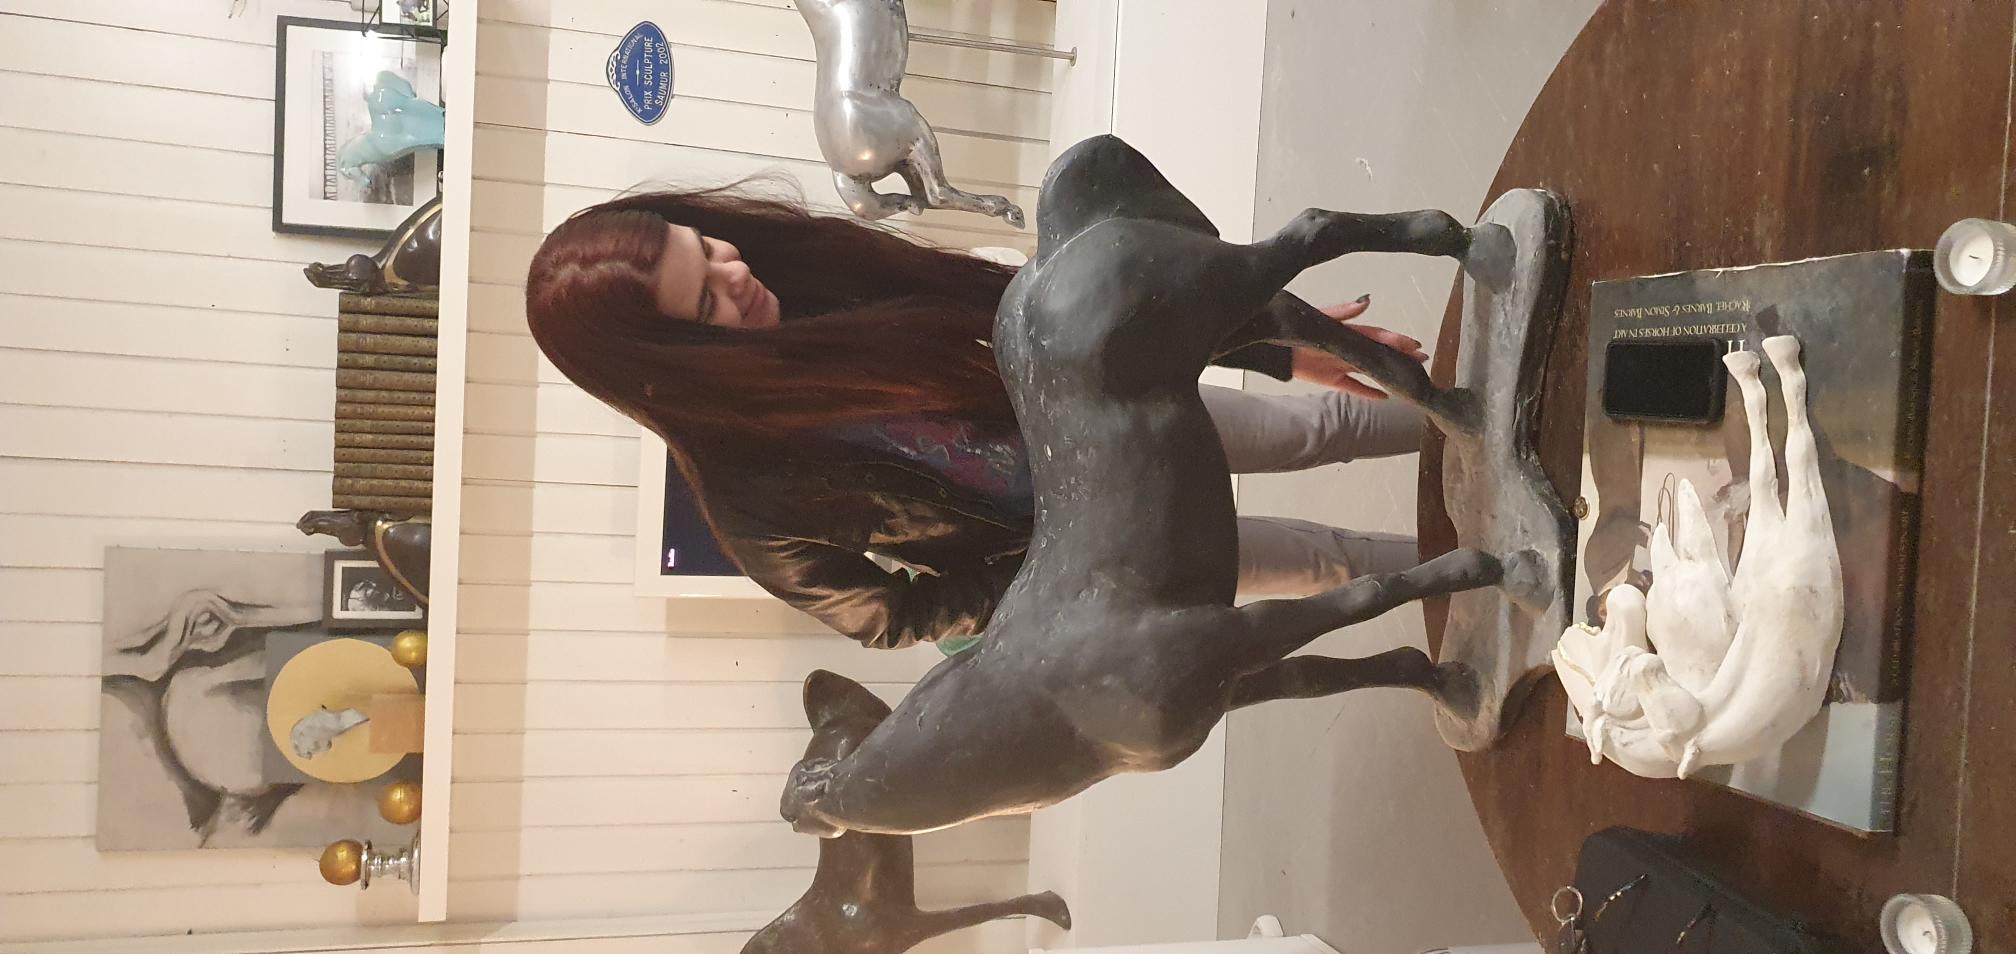 Lana taktilno istražuje konja akademskog kipara Hrvoja Dumančića